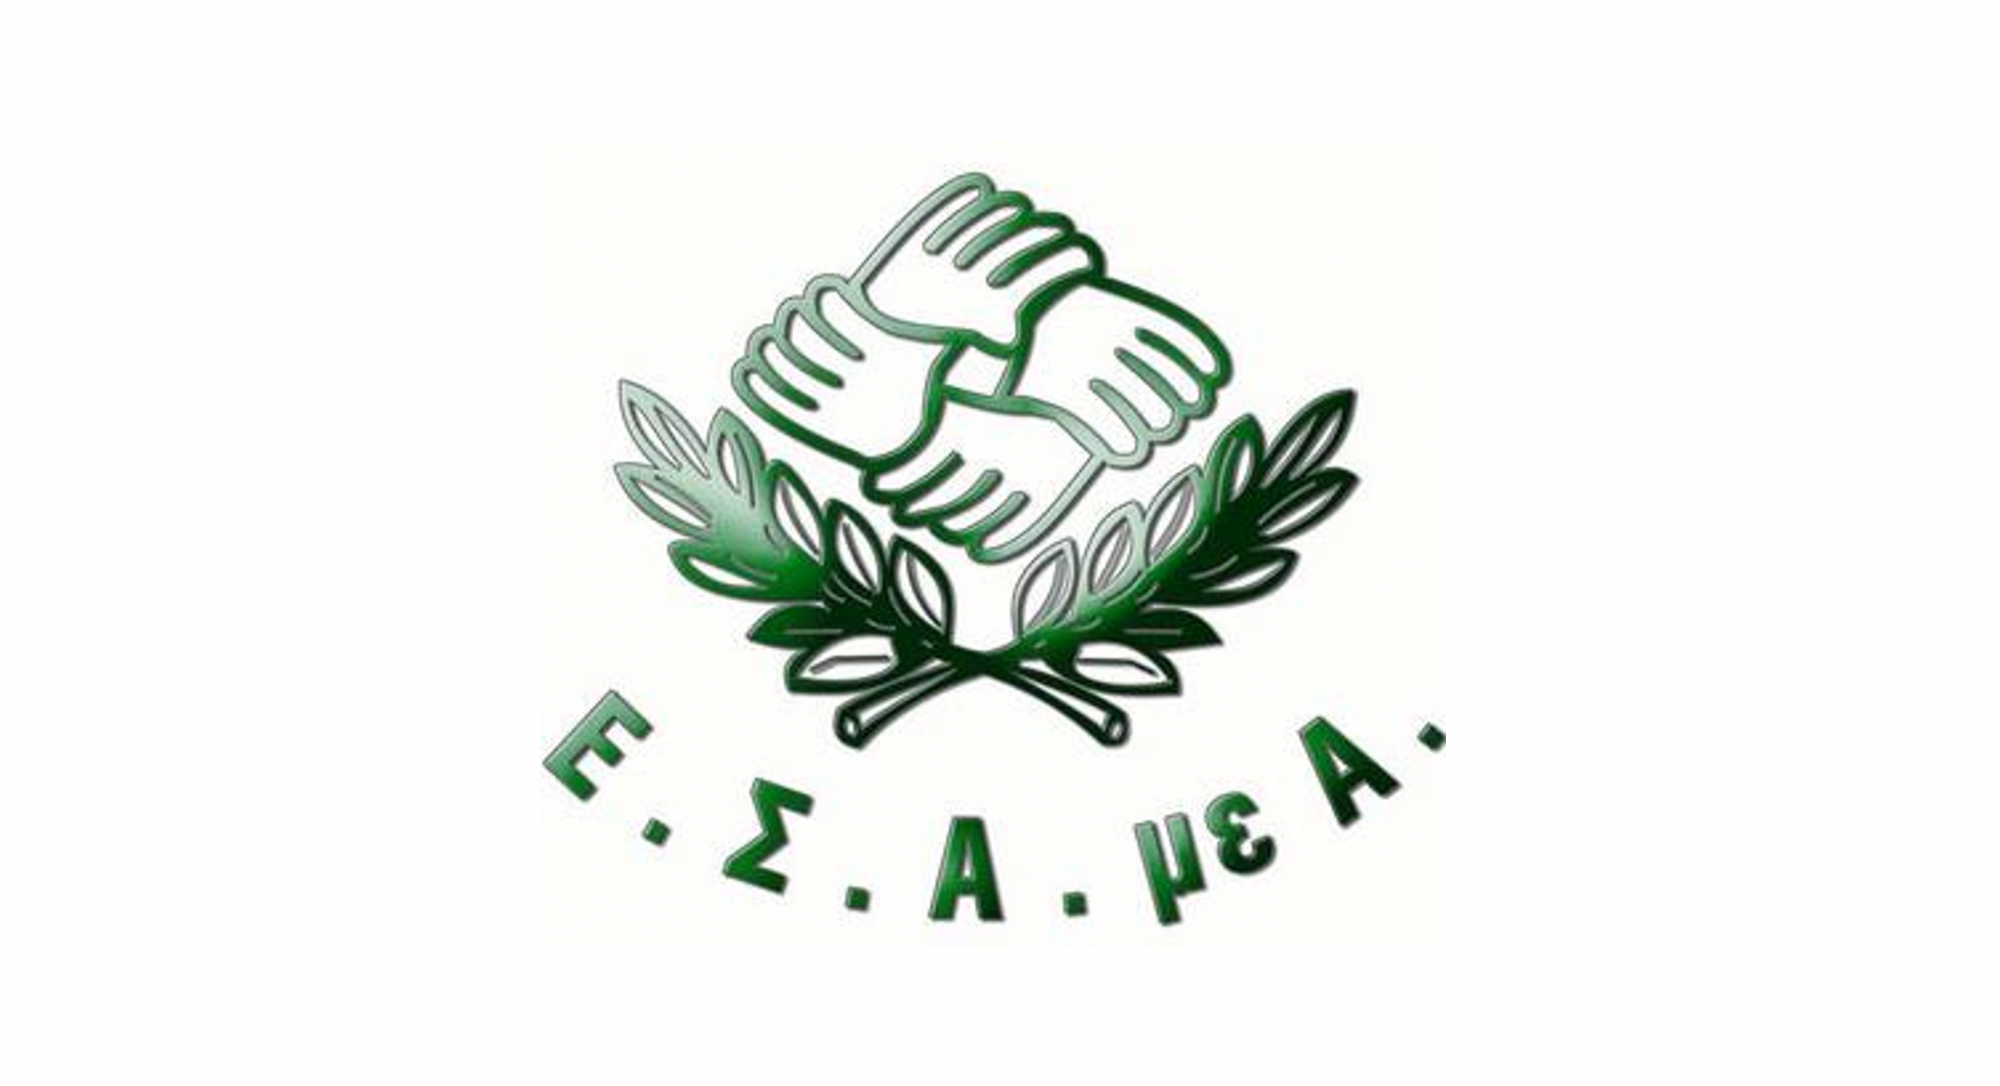 Το λογότυπο της ΕΣΑμεΑ